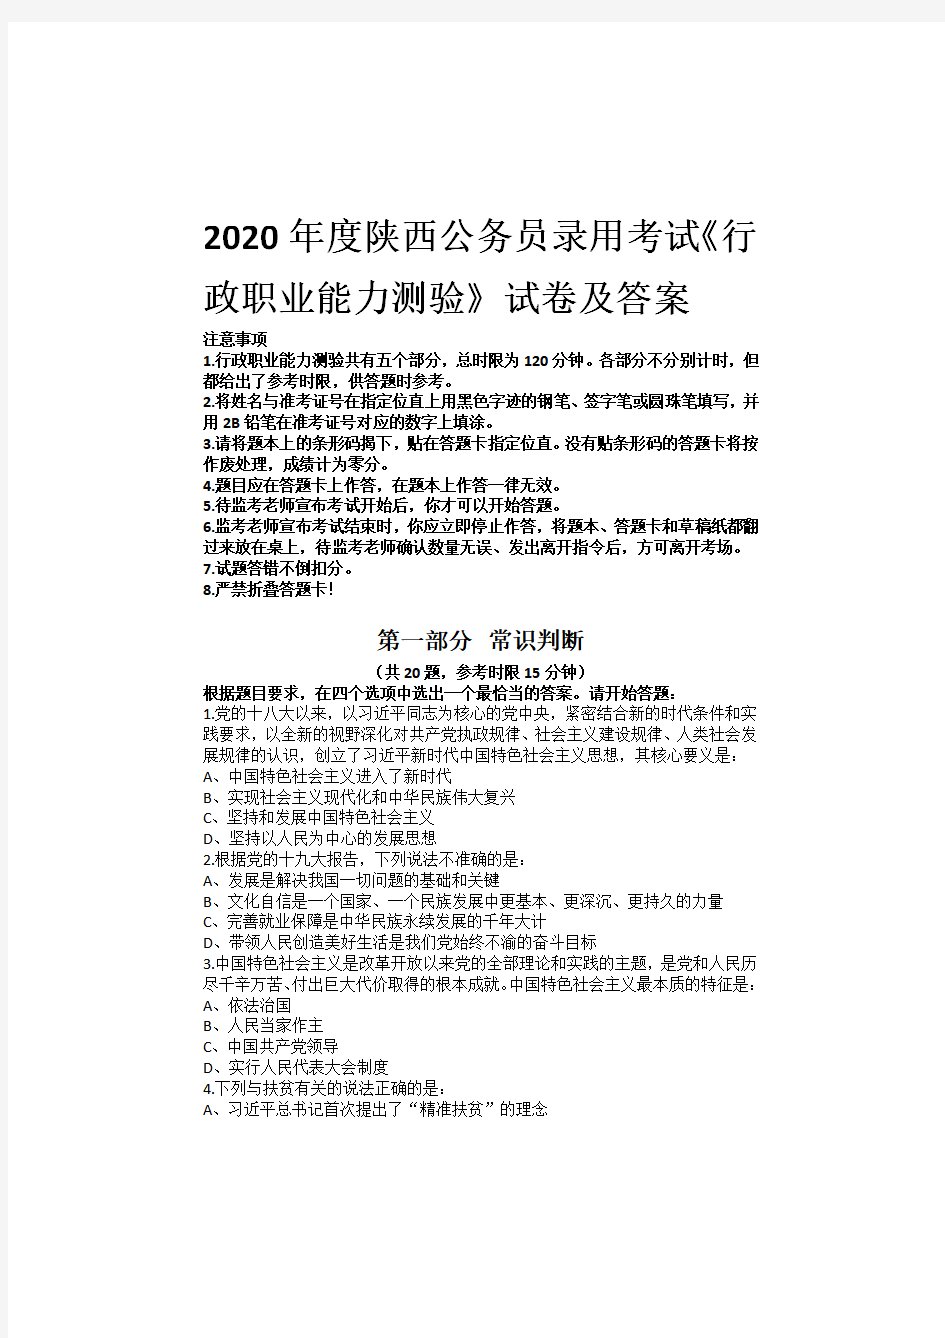 2020年度陕西公务员录用考试《行政职业能力测验》试卷及答案